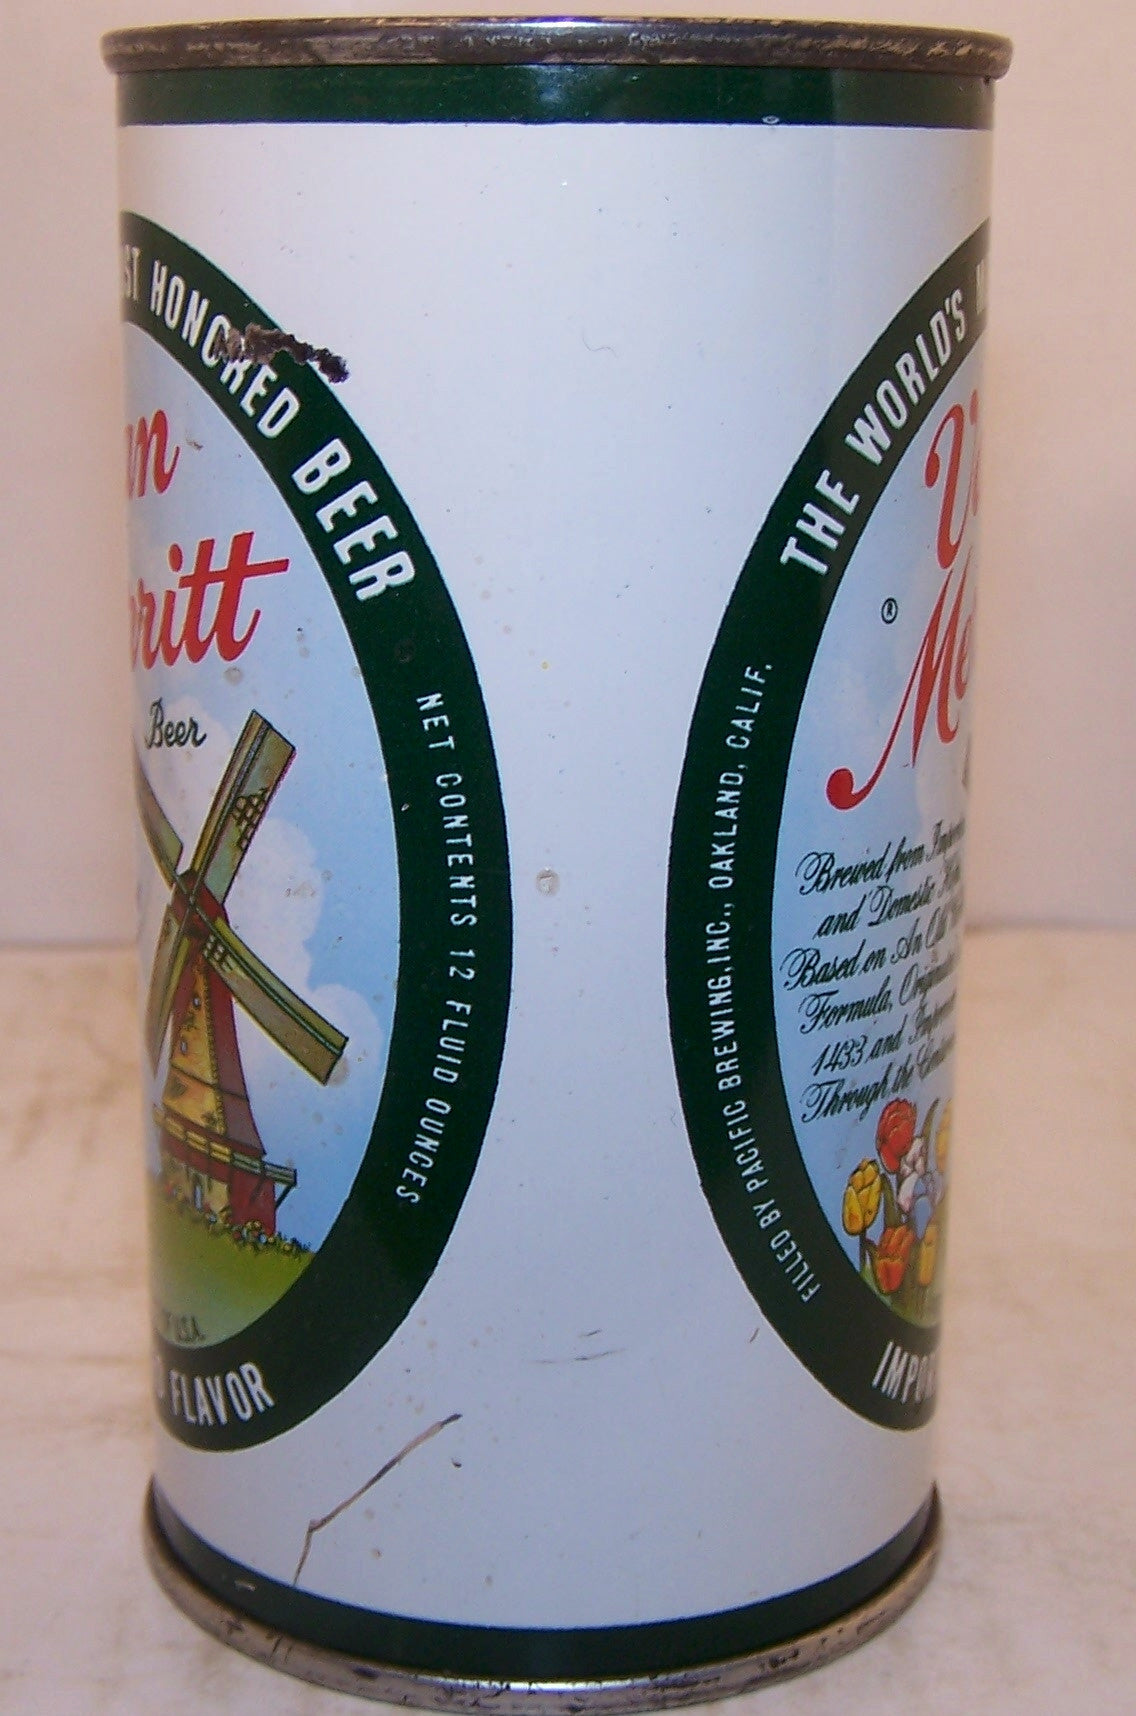 Van Merritt Beer (Pacific) USBC 143-18 Grade 1/1- Sold on 07/15/18